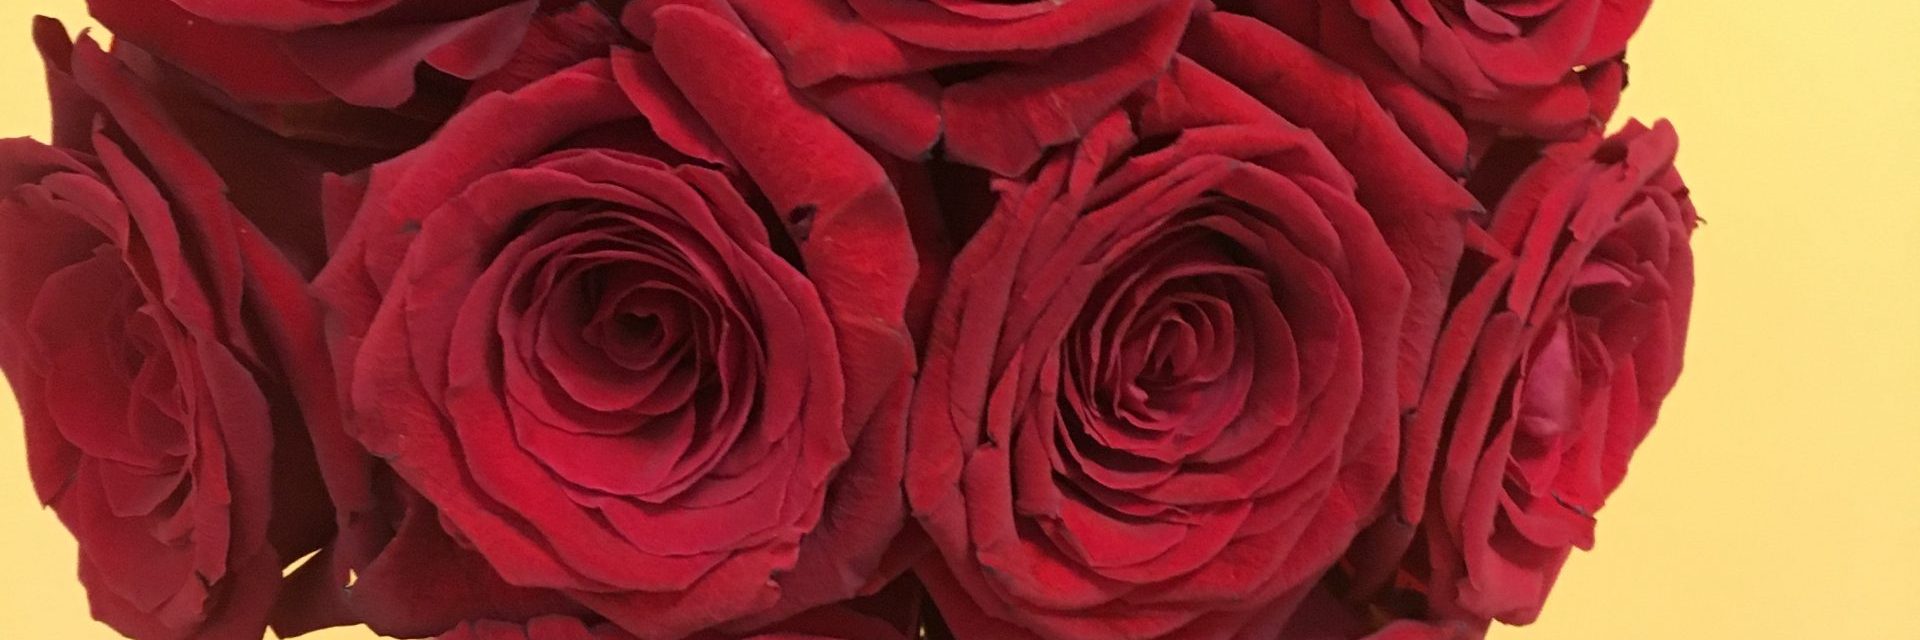 Significado de los colores de las rosas